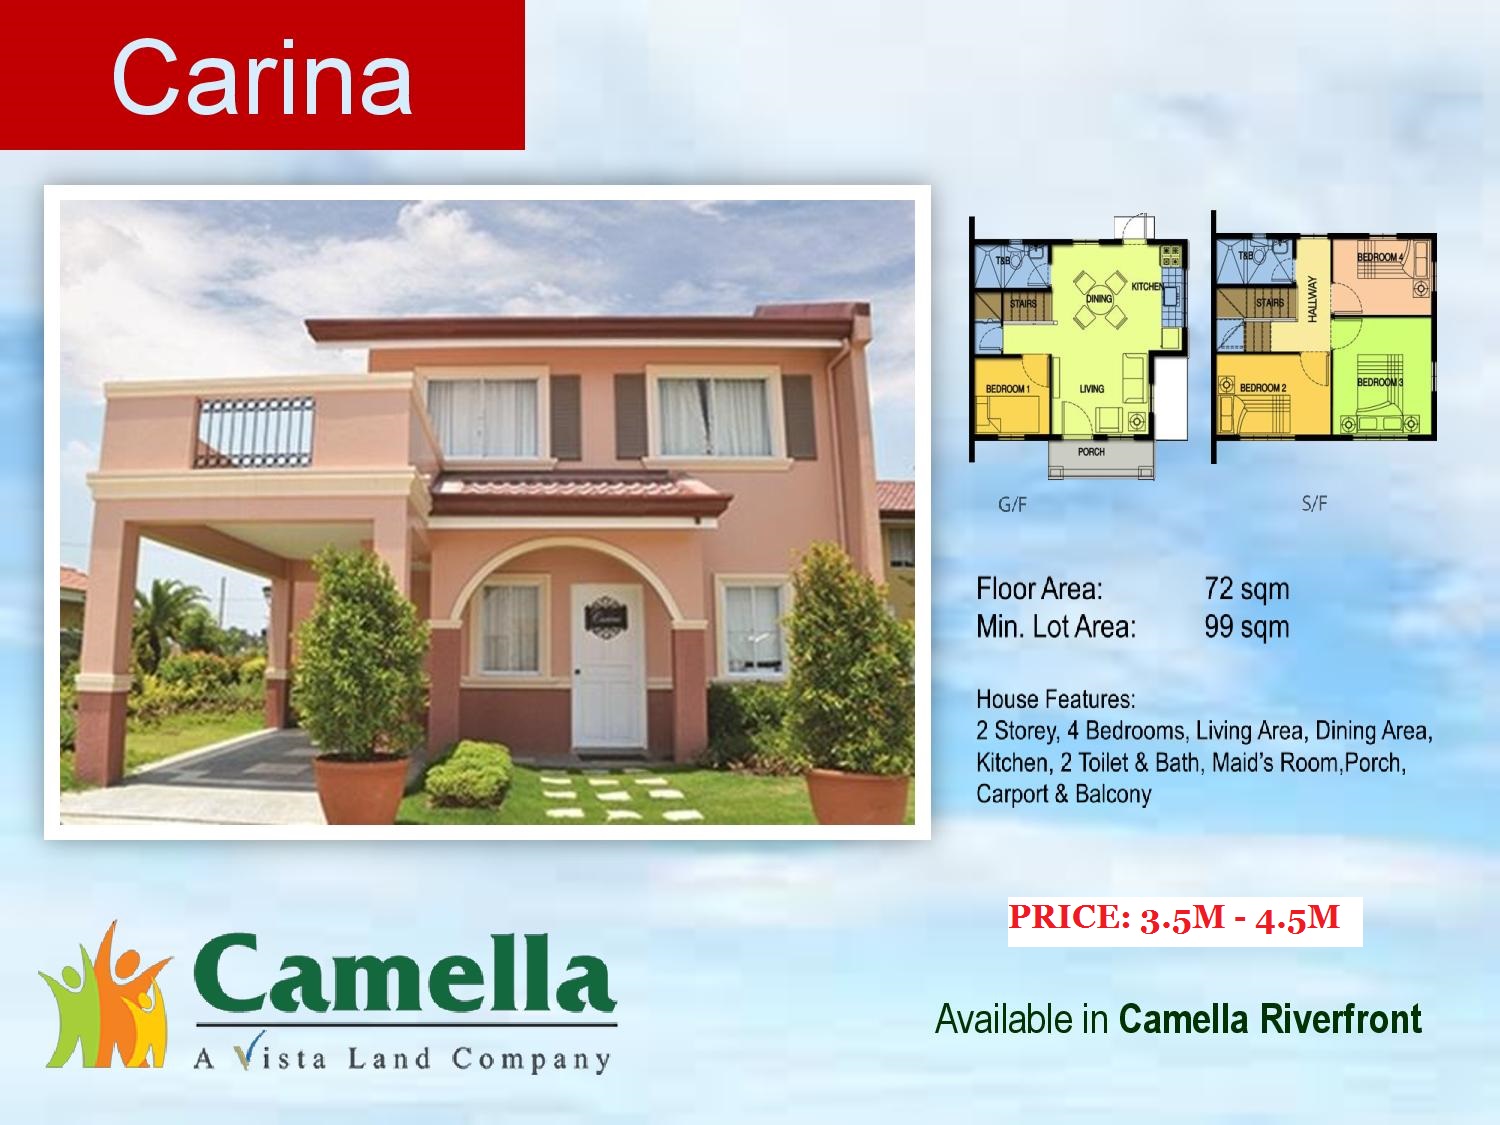 Camella Homes Riverfront Carina Model Pit-os Talamban Cebu City